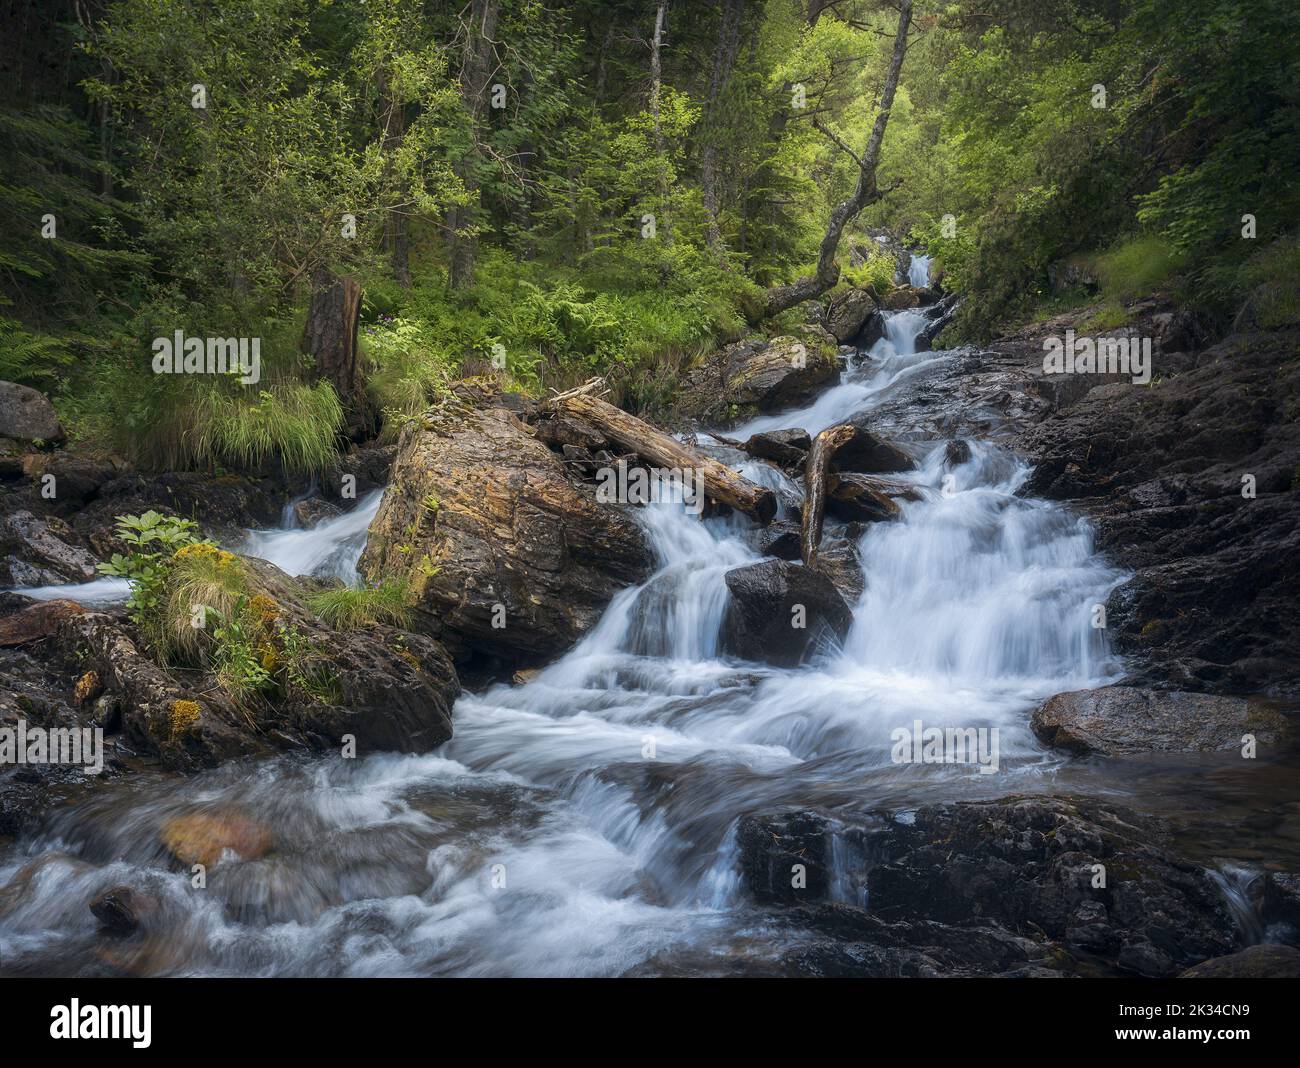 Waterfall at Comapedrosa Natural Park in Andorra Stock Photo